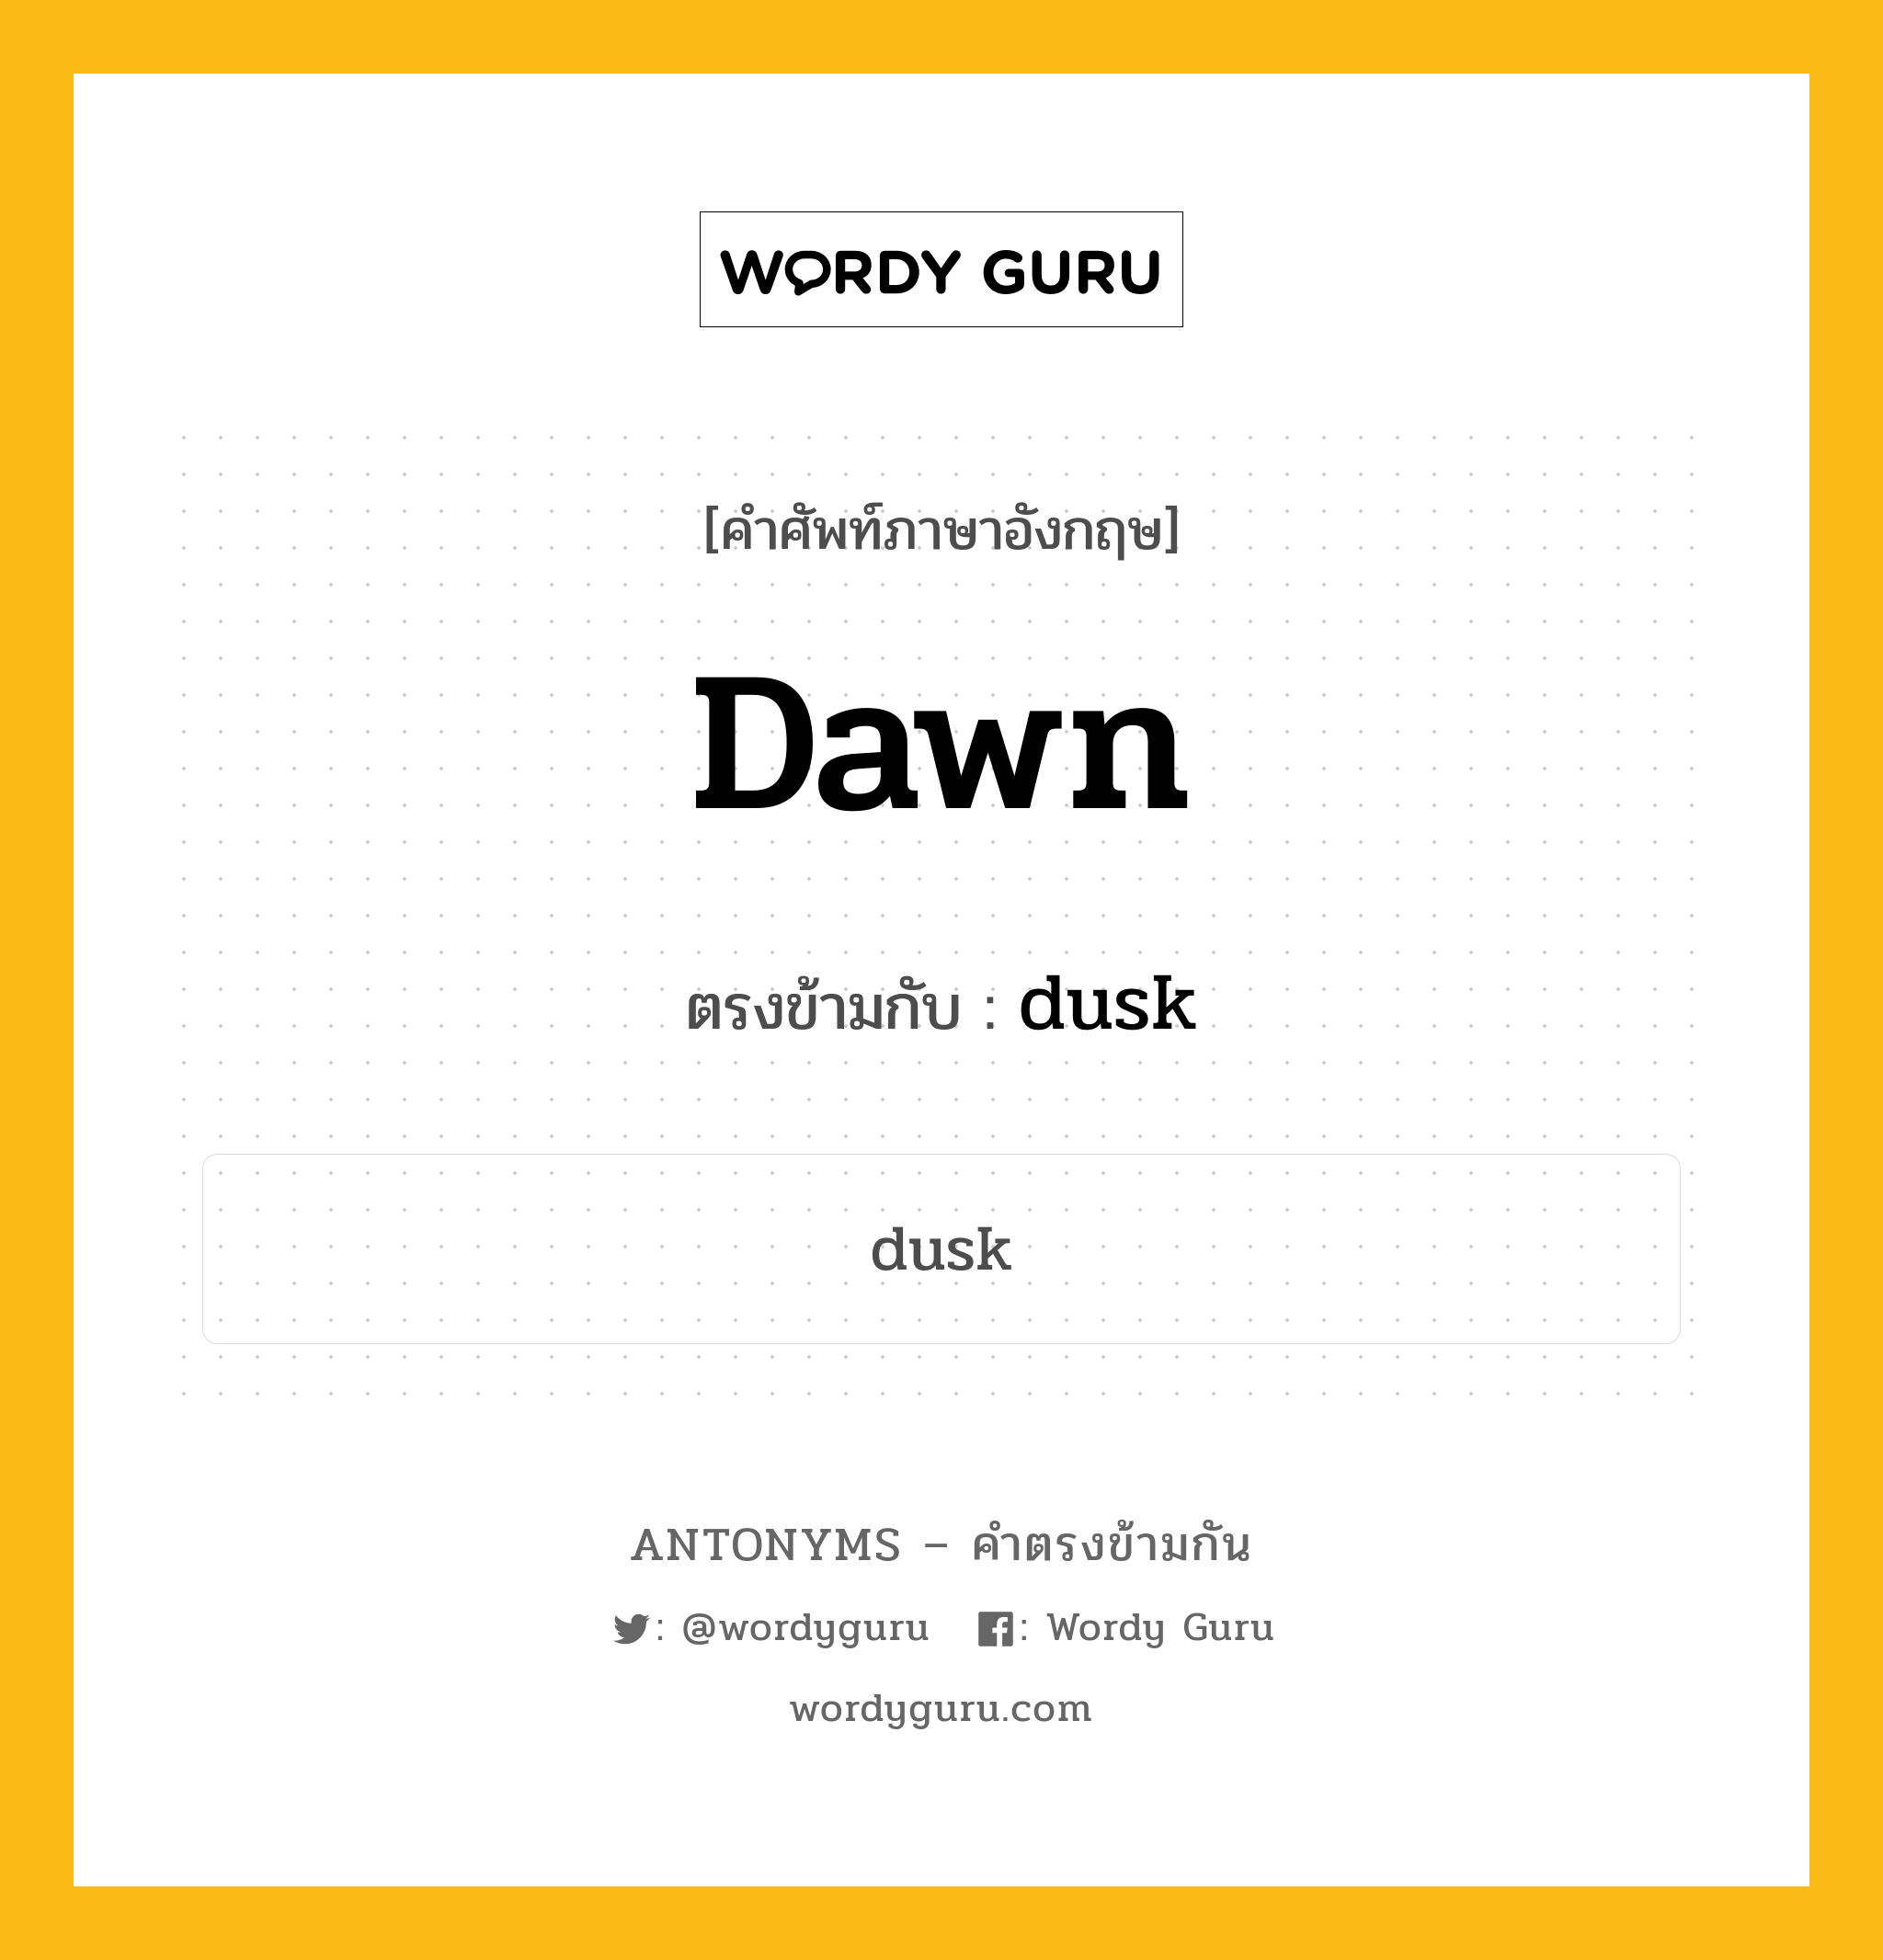 dawn เป็นคำตรงข้ามกับคำไหนบ้าง?, คำศัพท์ภาษาอังกฤษ dawn ตรงข้ามกับ dusk หมวด dusk